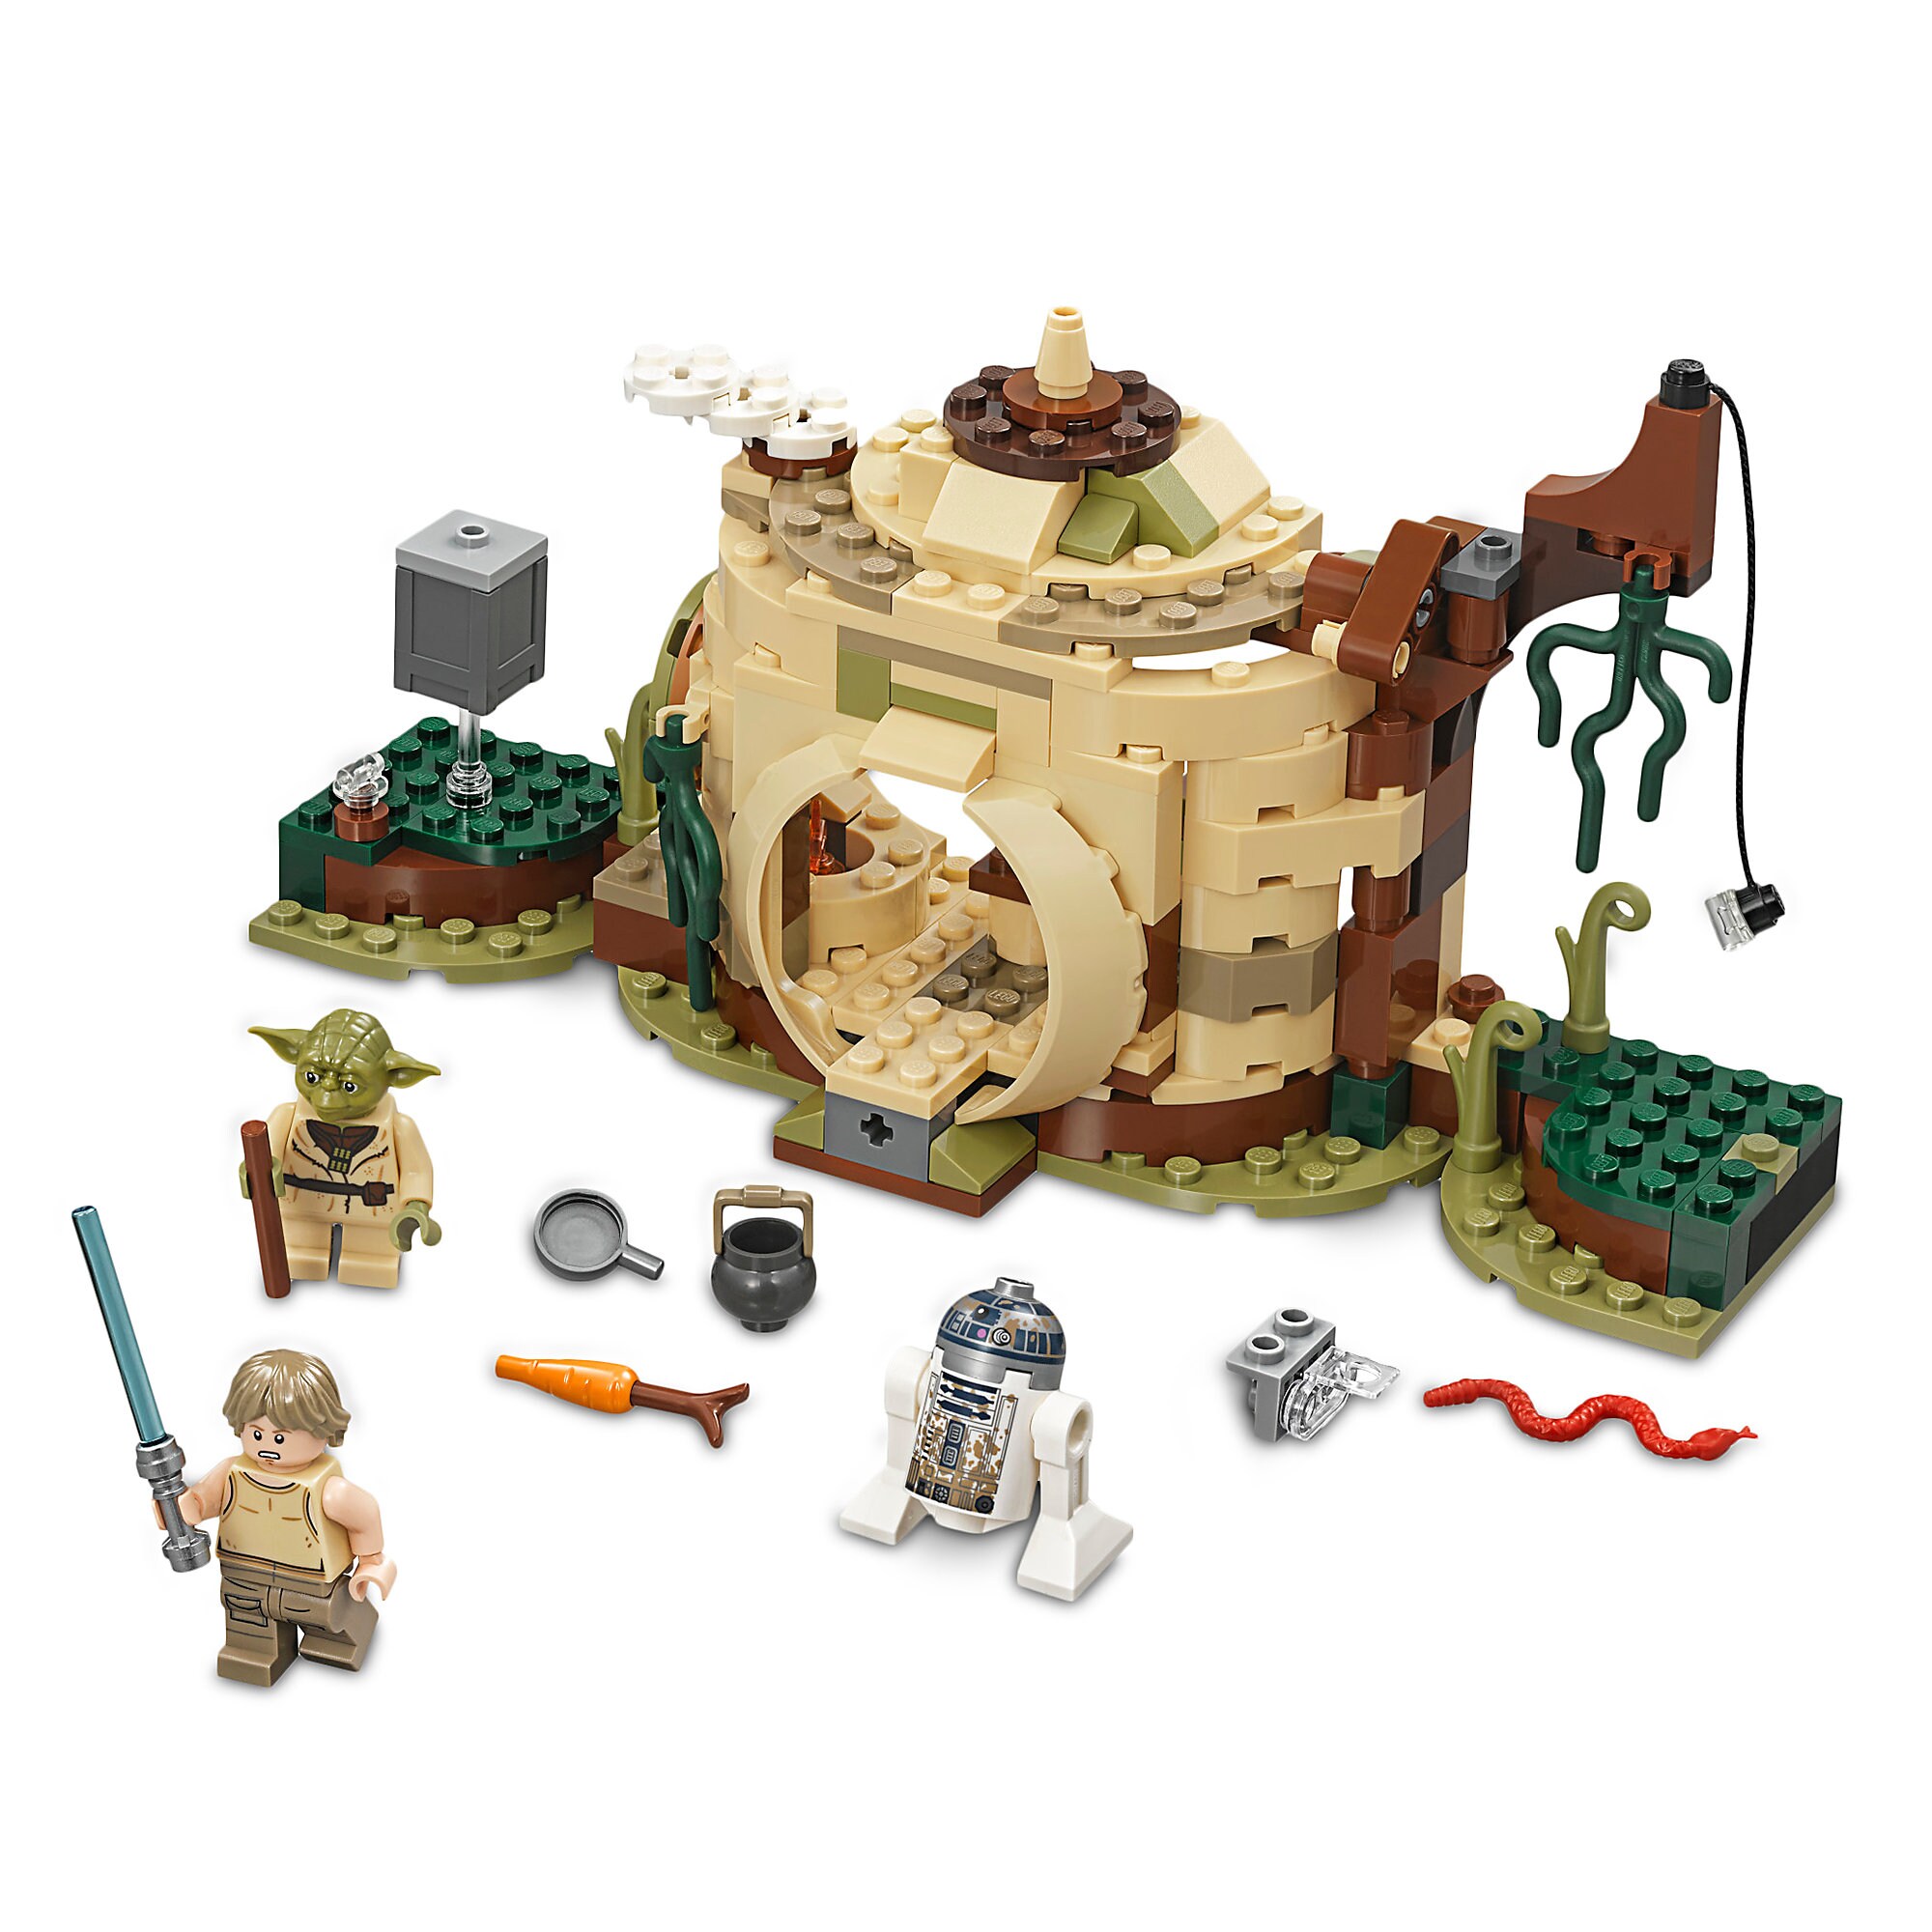 Yoda's Hut Playset by LEGO